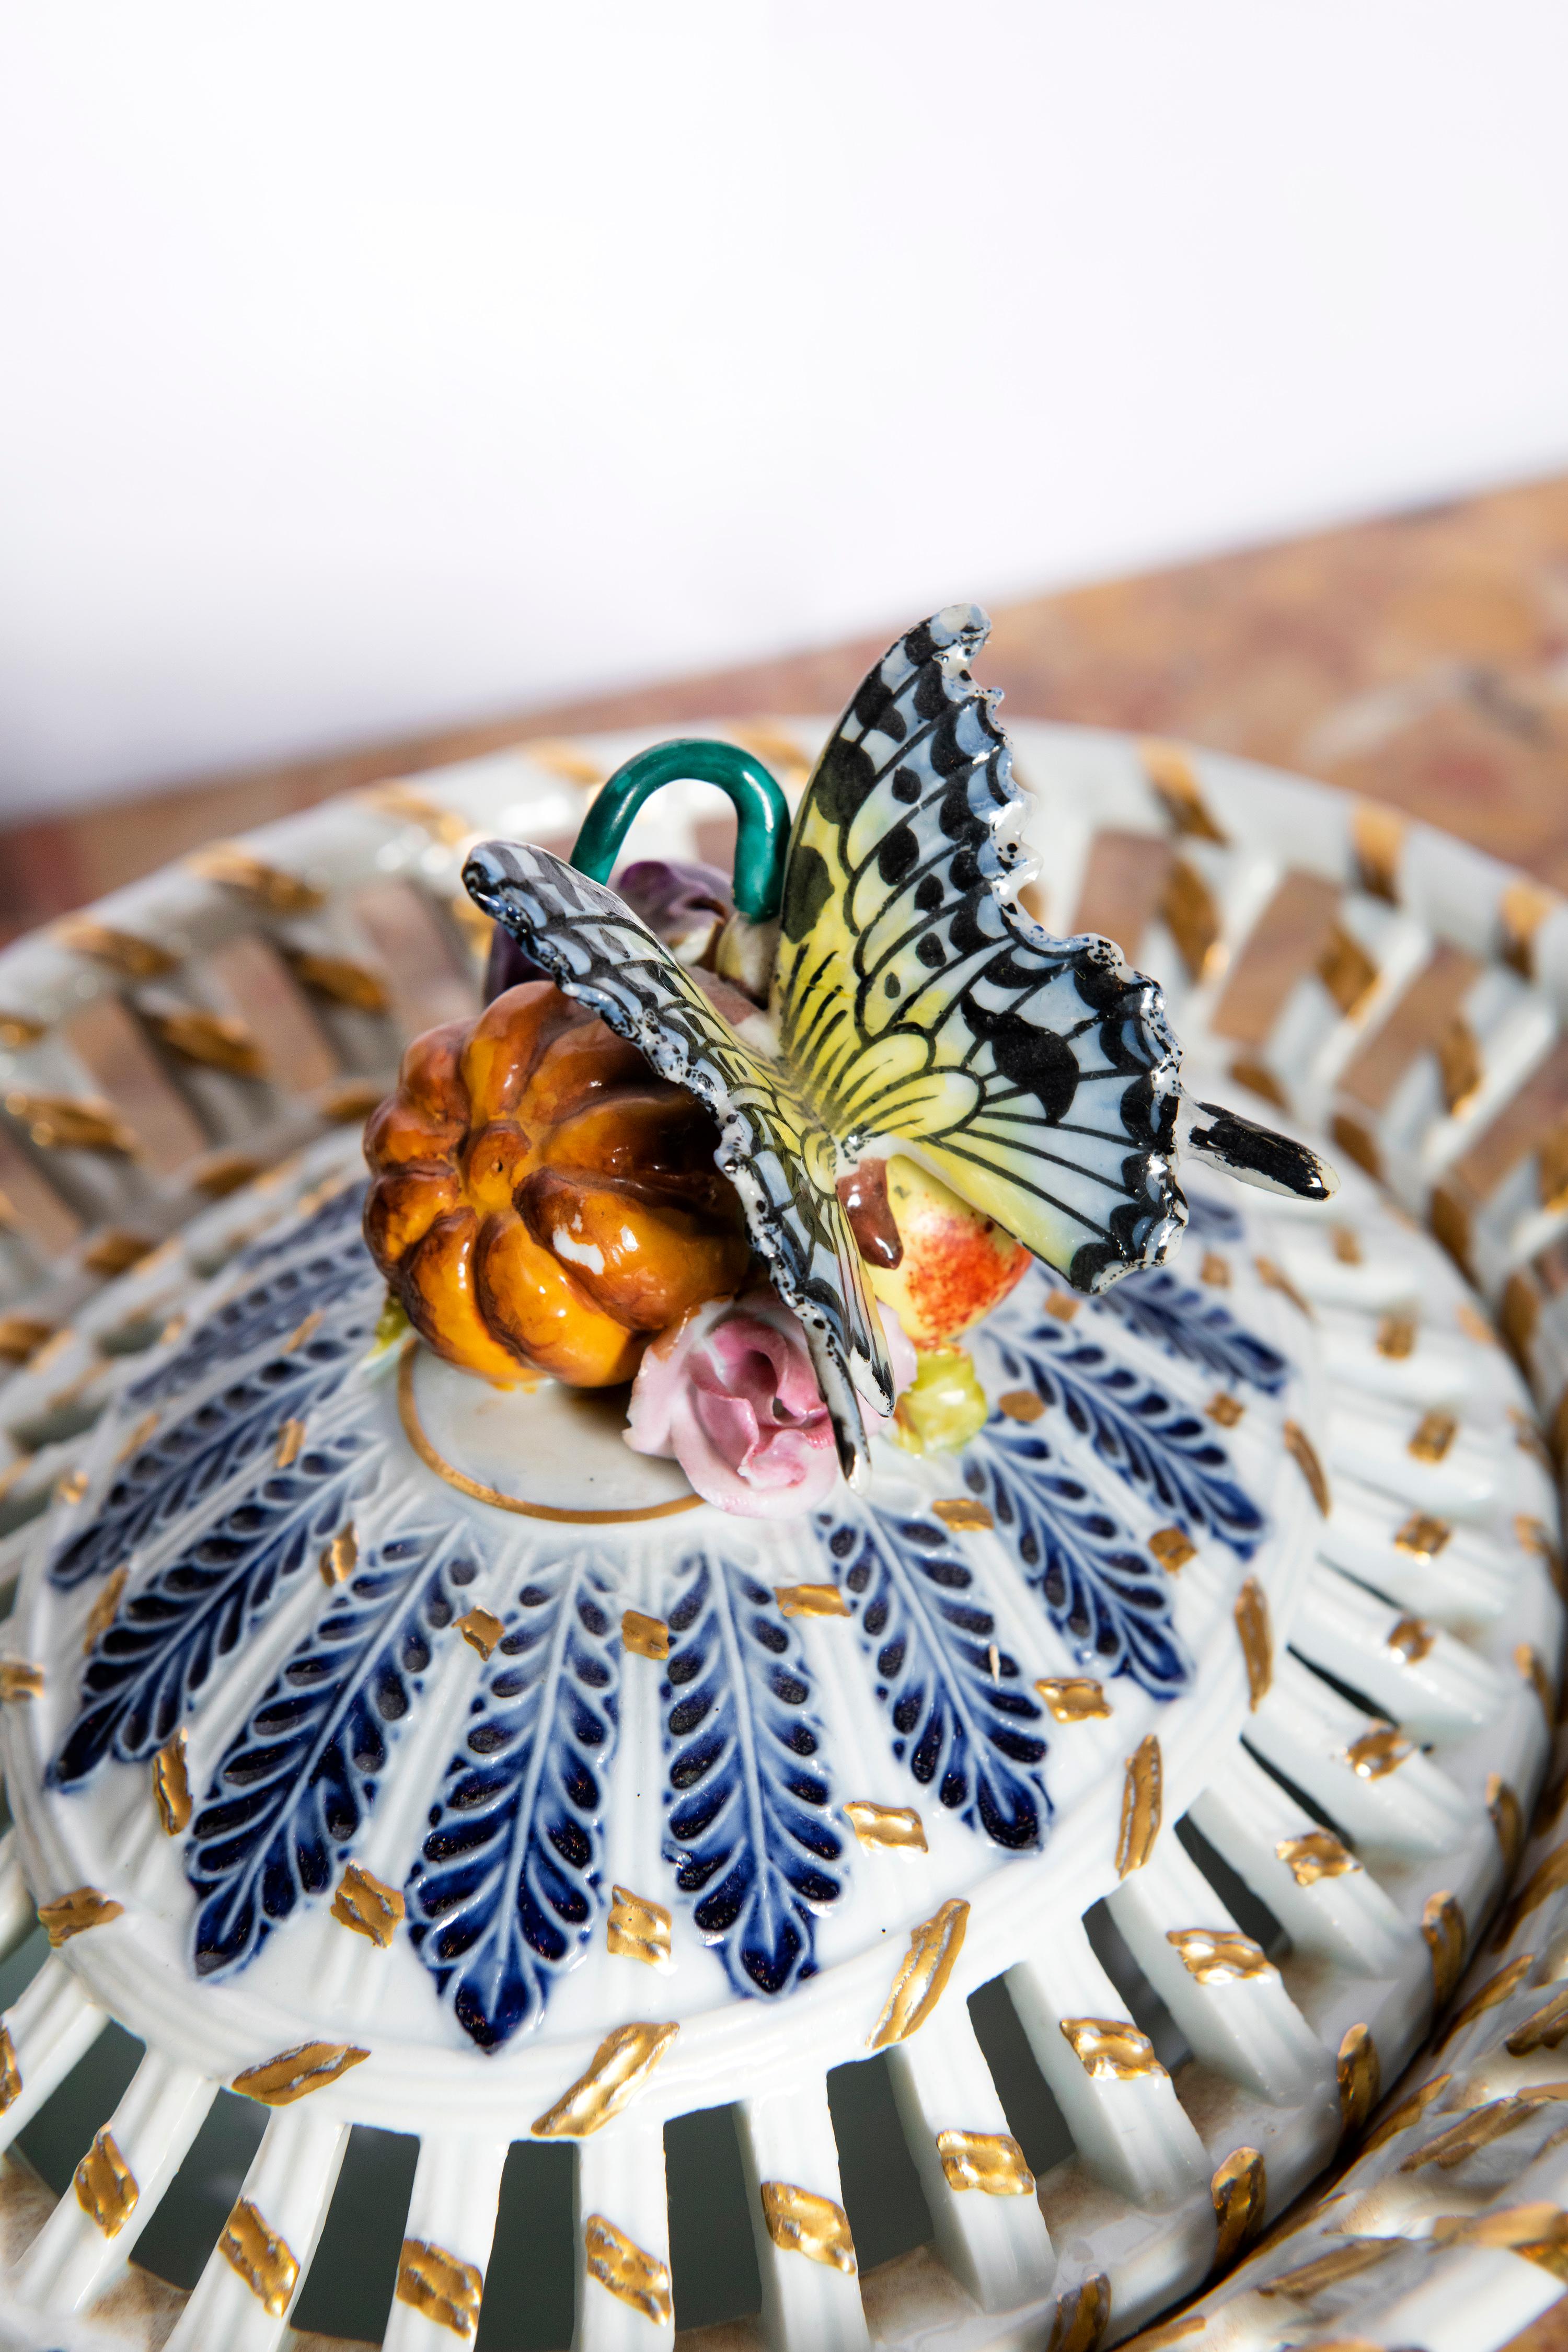 Porzellandose signiert Sèvres, Frankreich, Ende 19.
Mit Schmetterlingen und Früchten dekorieren.